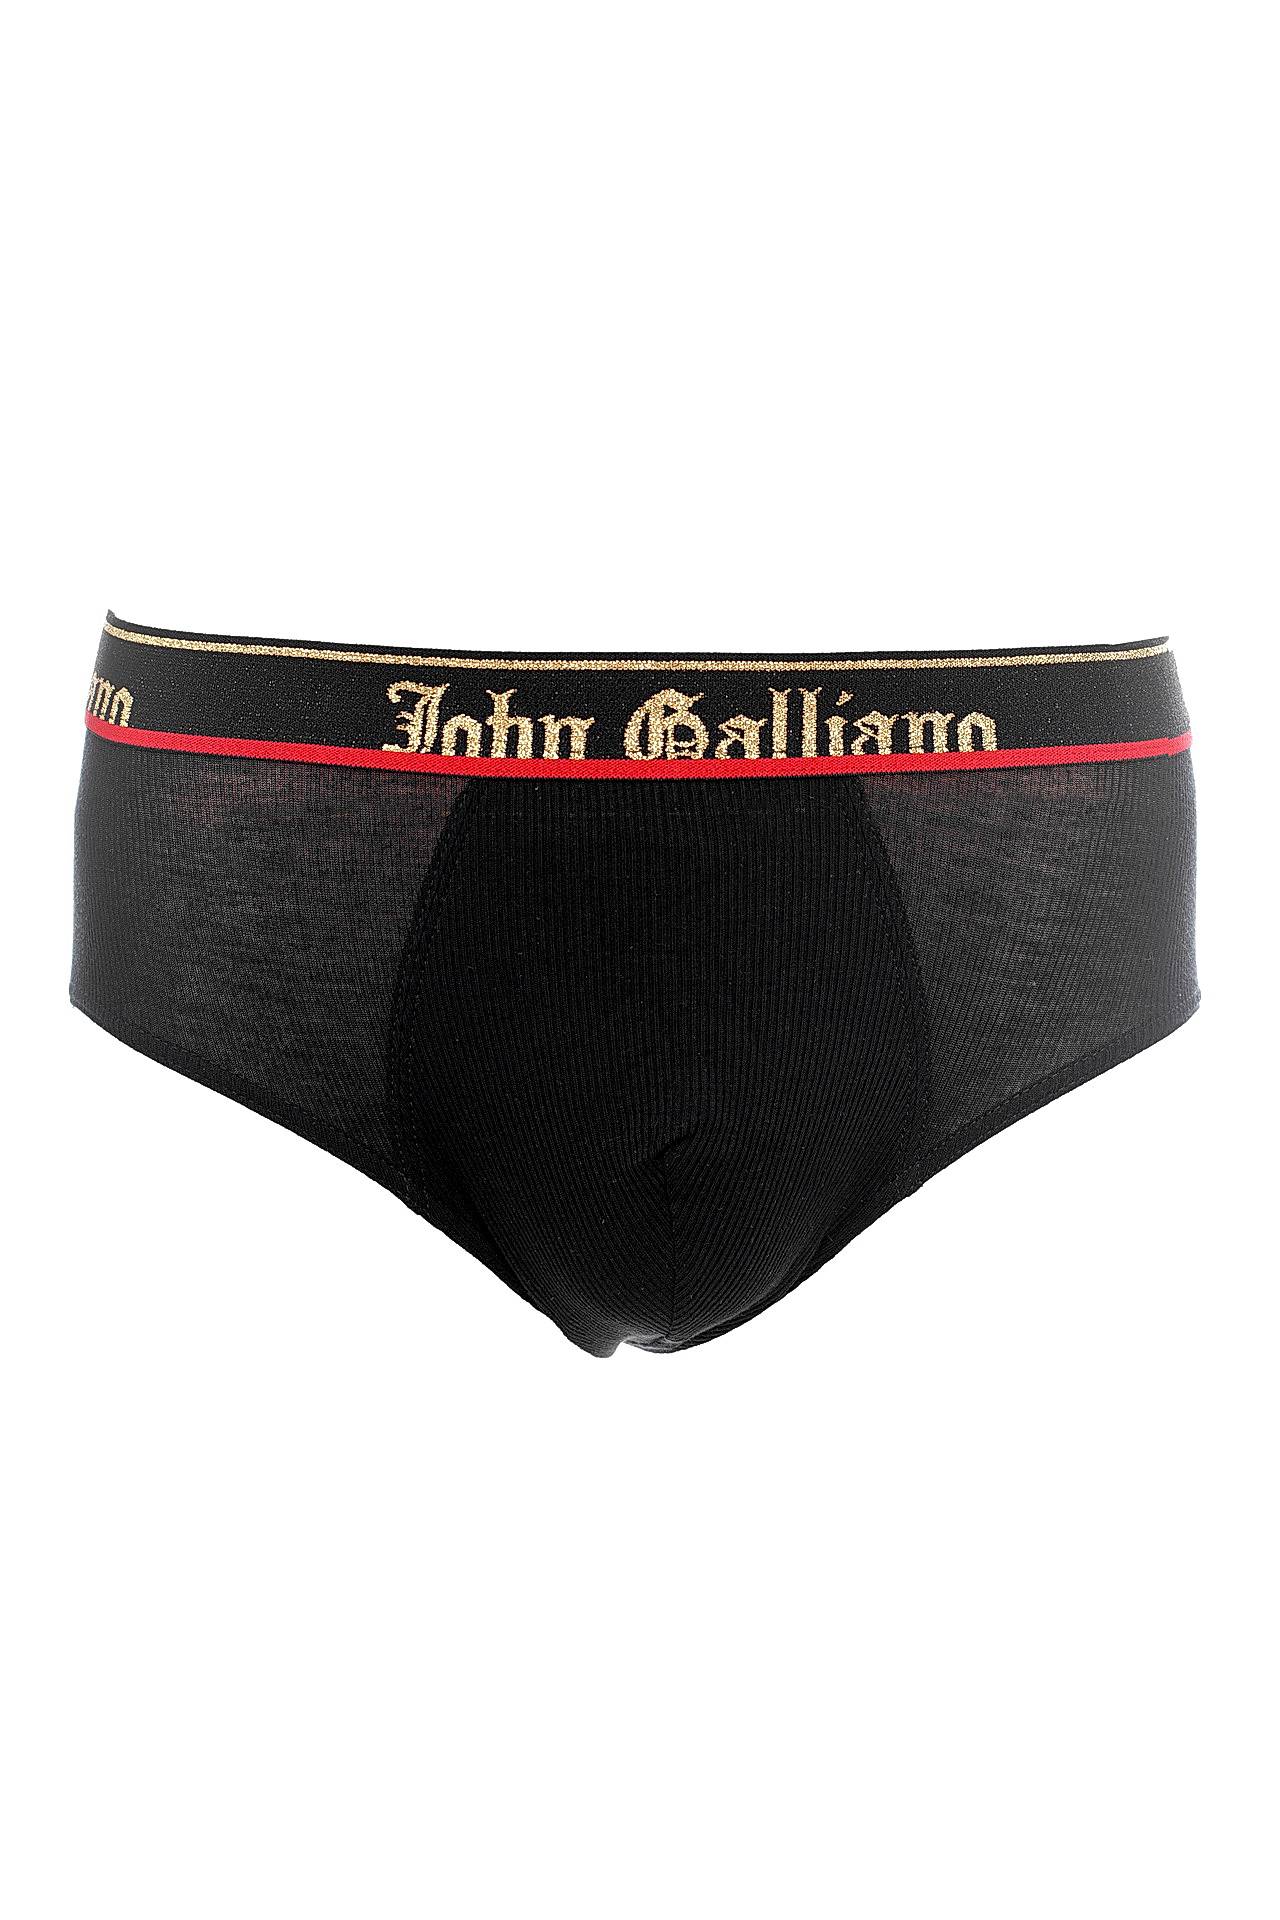 Одежда мужская Трусы JOHN GALLIANO (L01H042/19). Купить за 4450 руб.